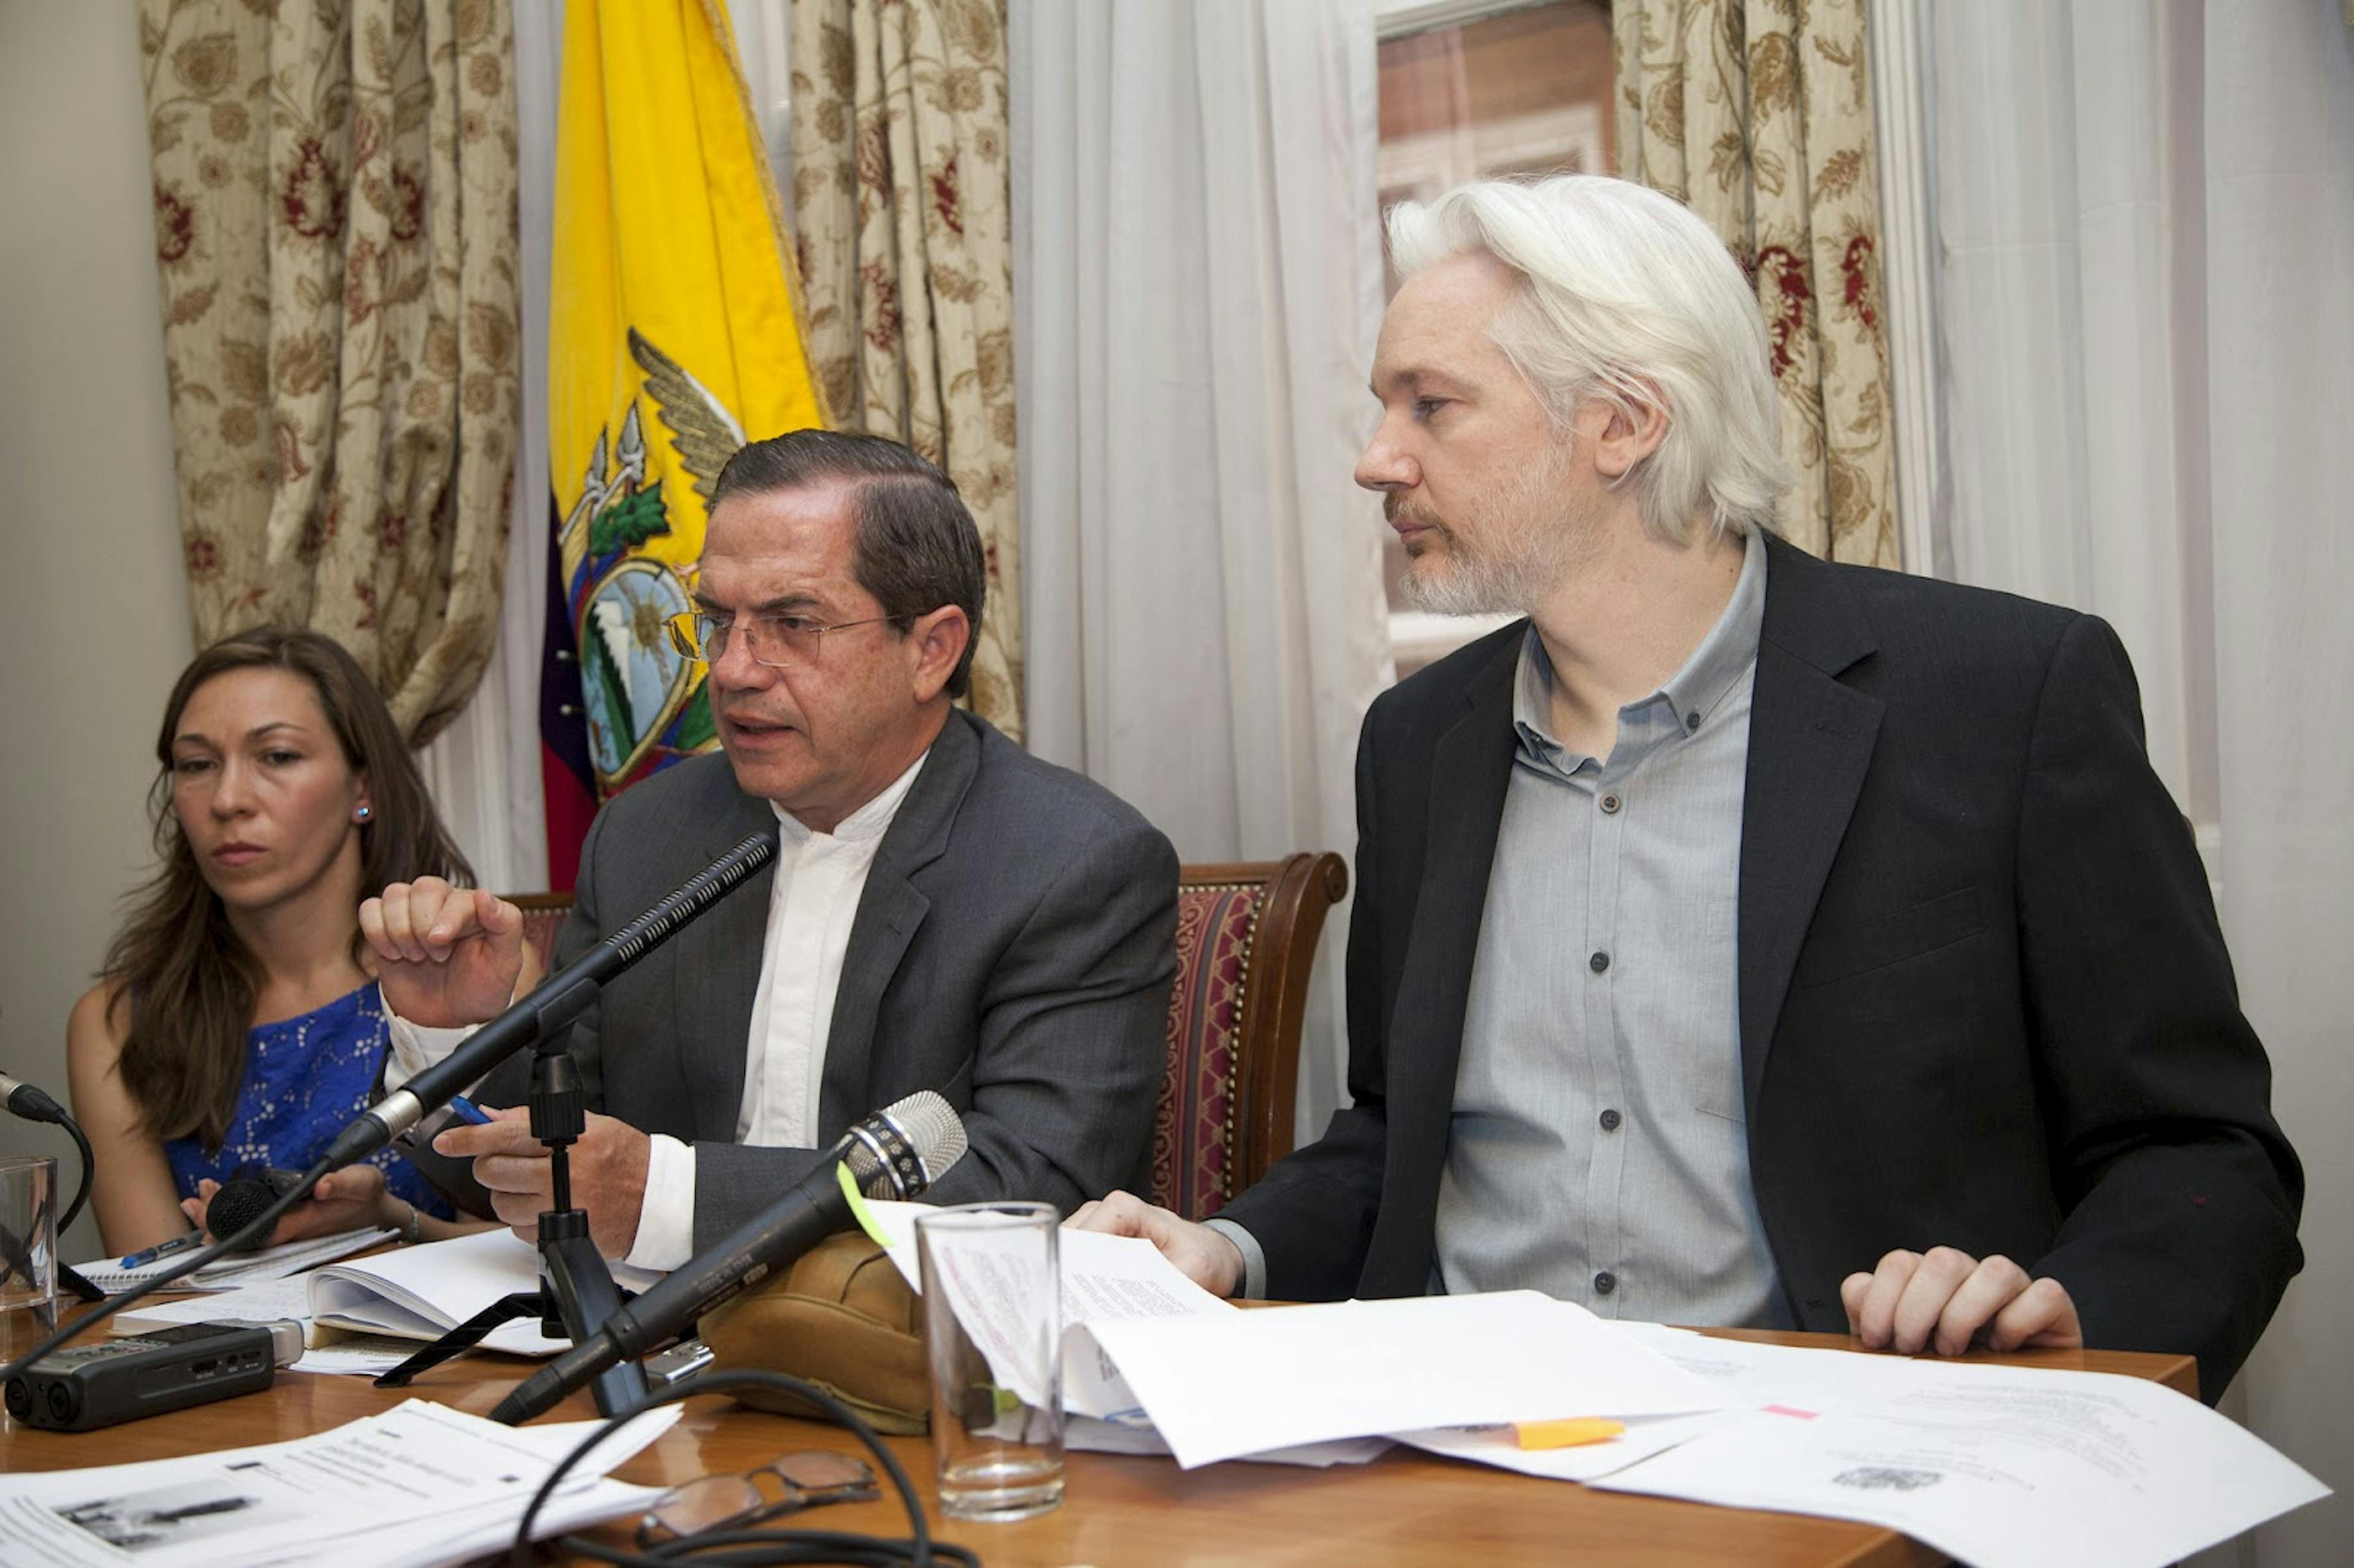 Assange, Birleşik Krallık'taki Ekvador Büyükelçiliği'nde bir basın toplantısı sırasında (2014). Resim: Cancillería de Ekvador / Flickr.